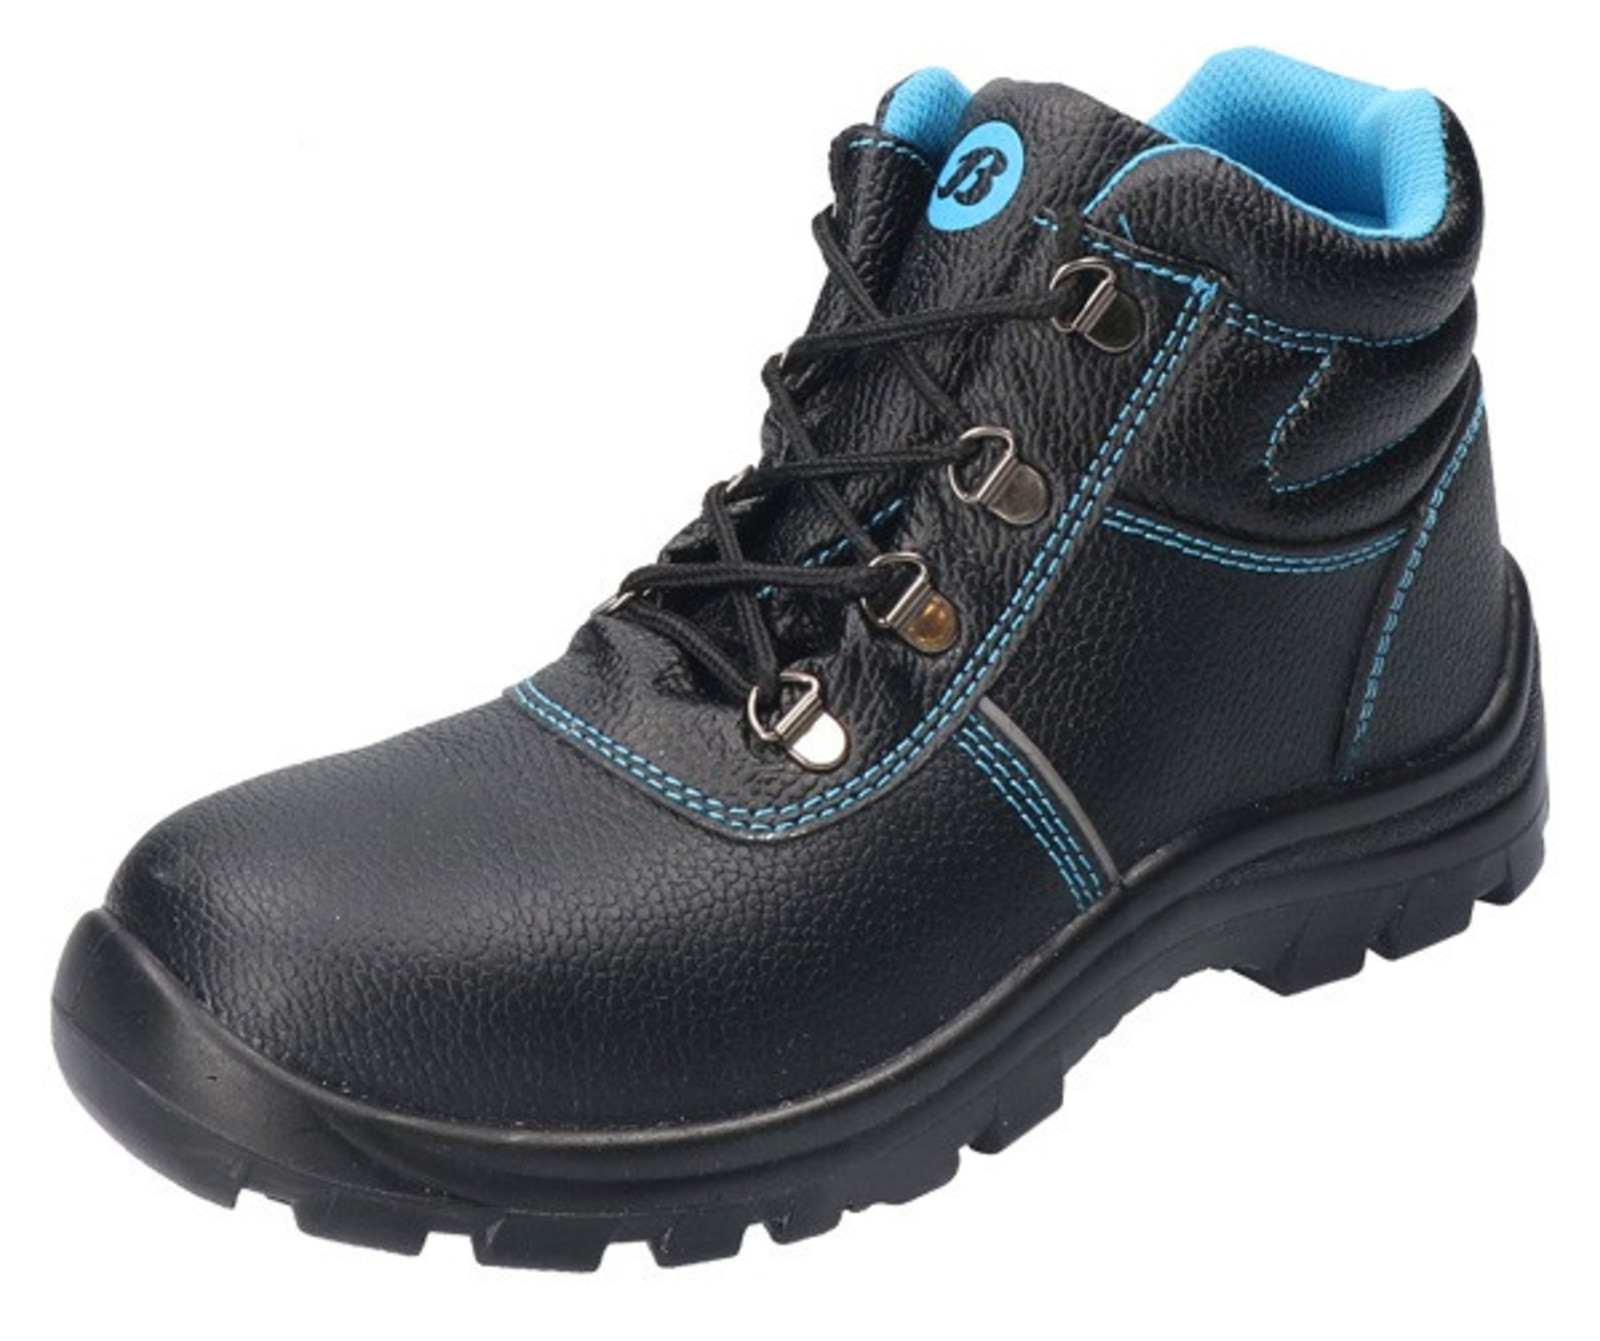 Bezpečnostná obuv Baťa Sirocco S3 - veľkosť: 44, farba: čierna